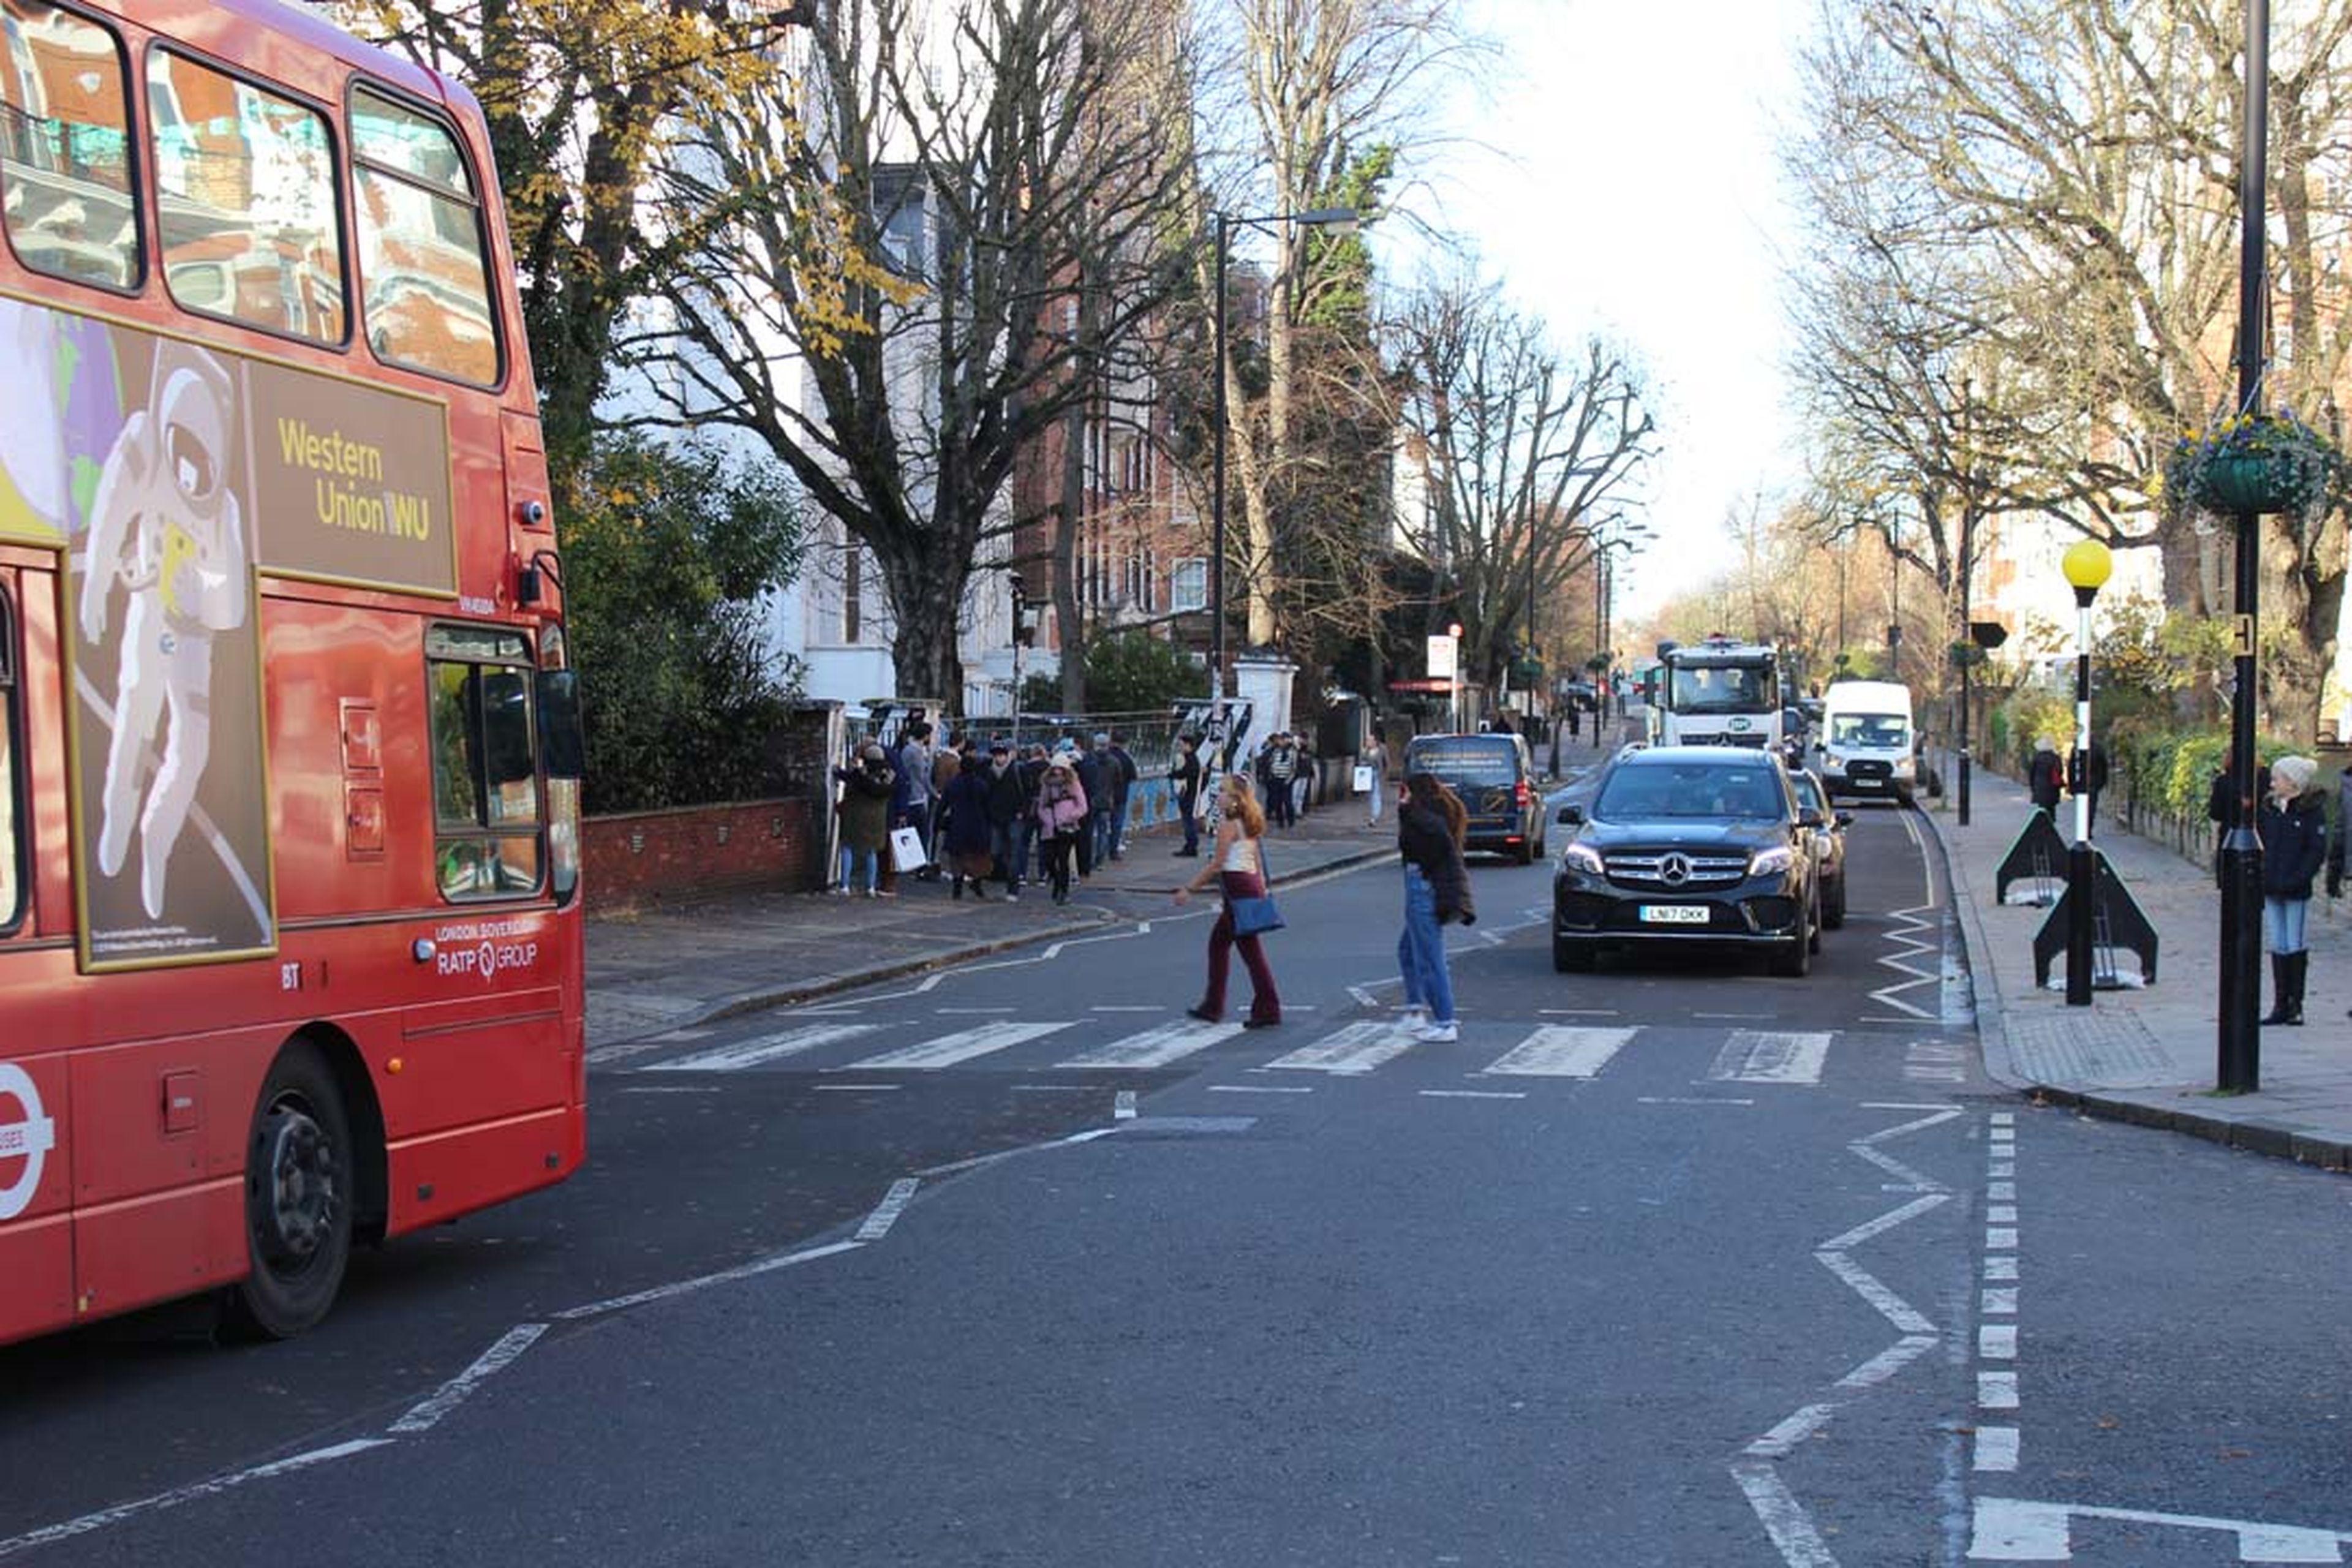 Pintan otra vez Abbey Road por el coronavirus